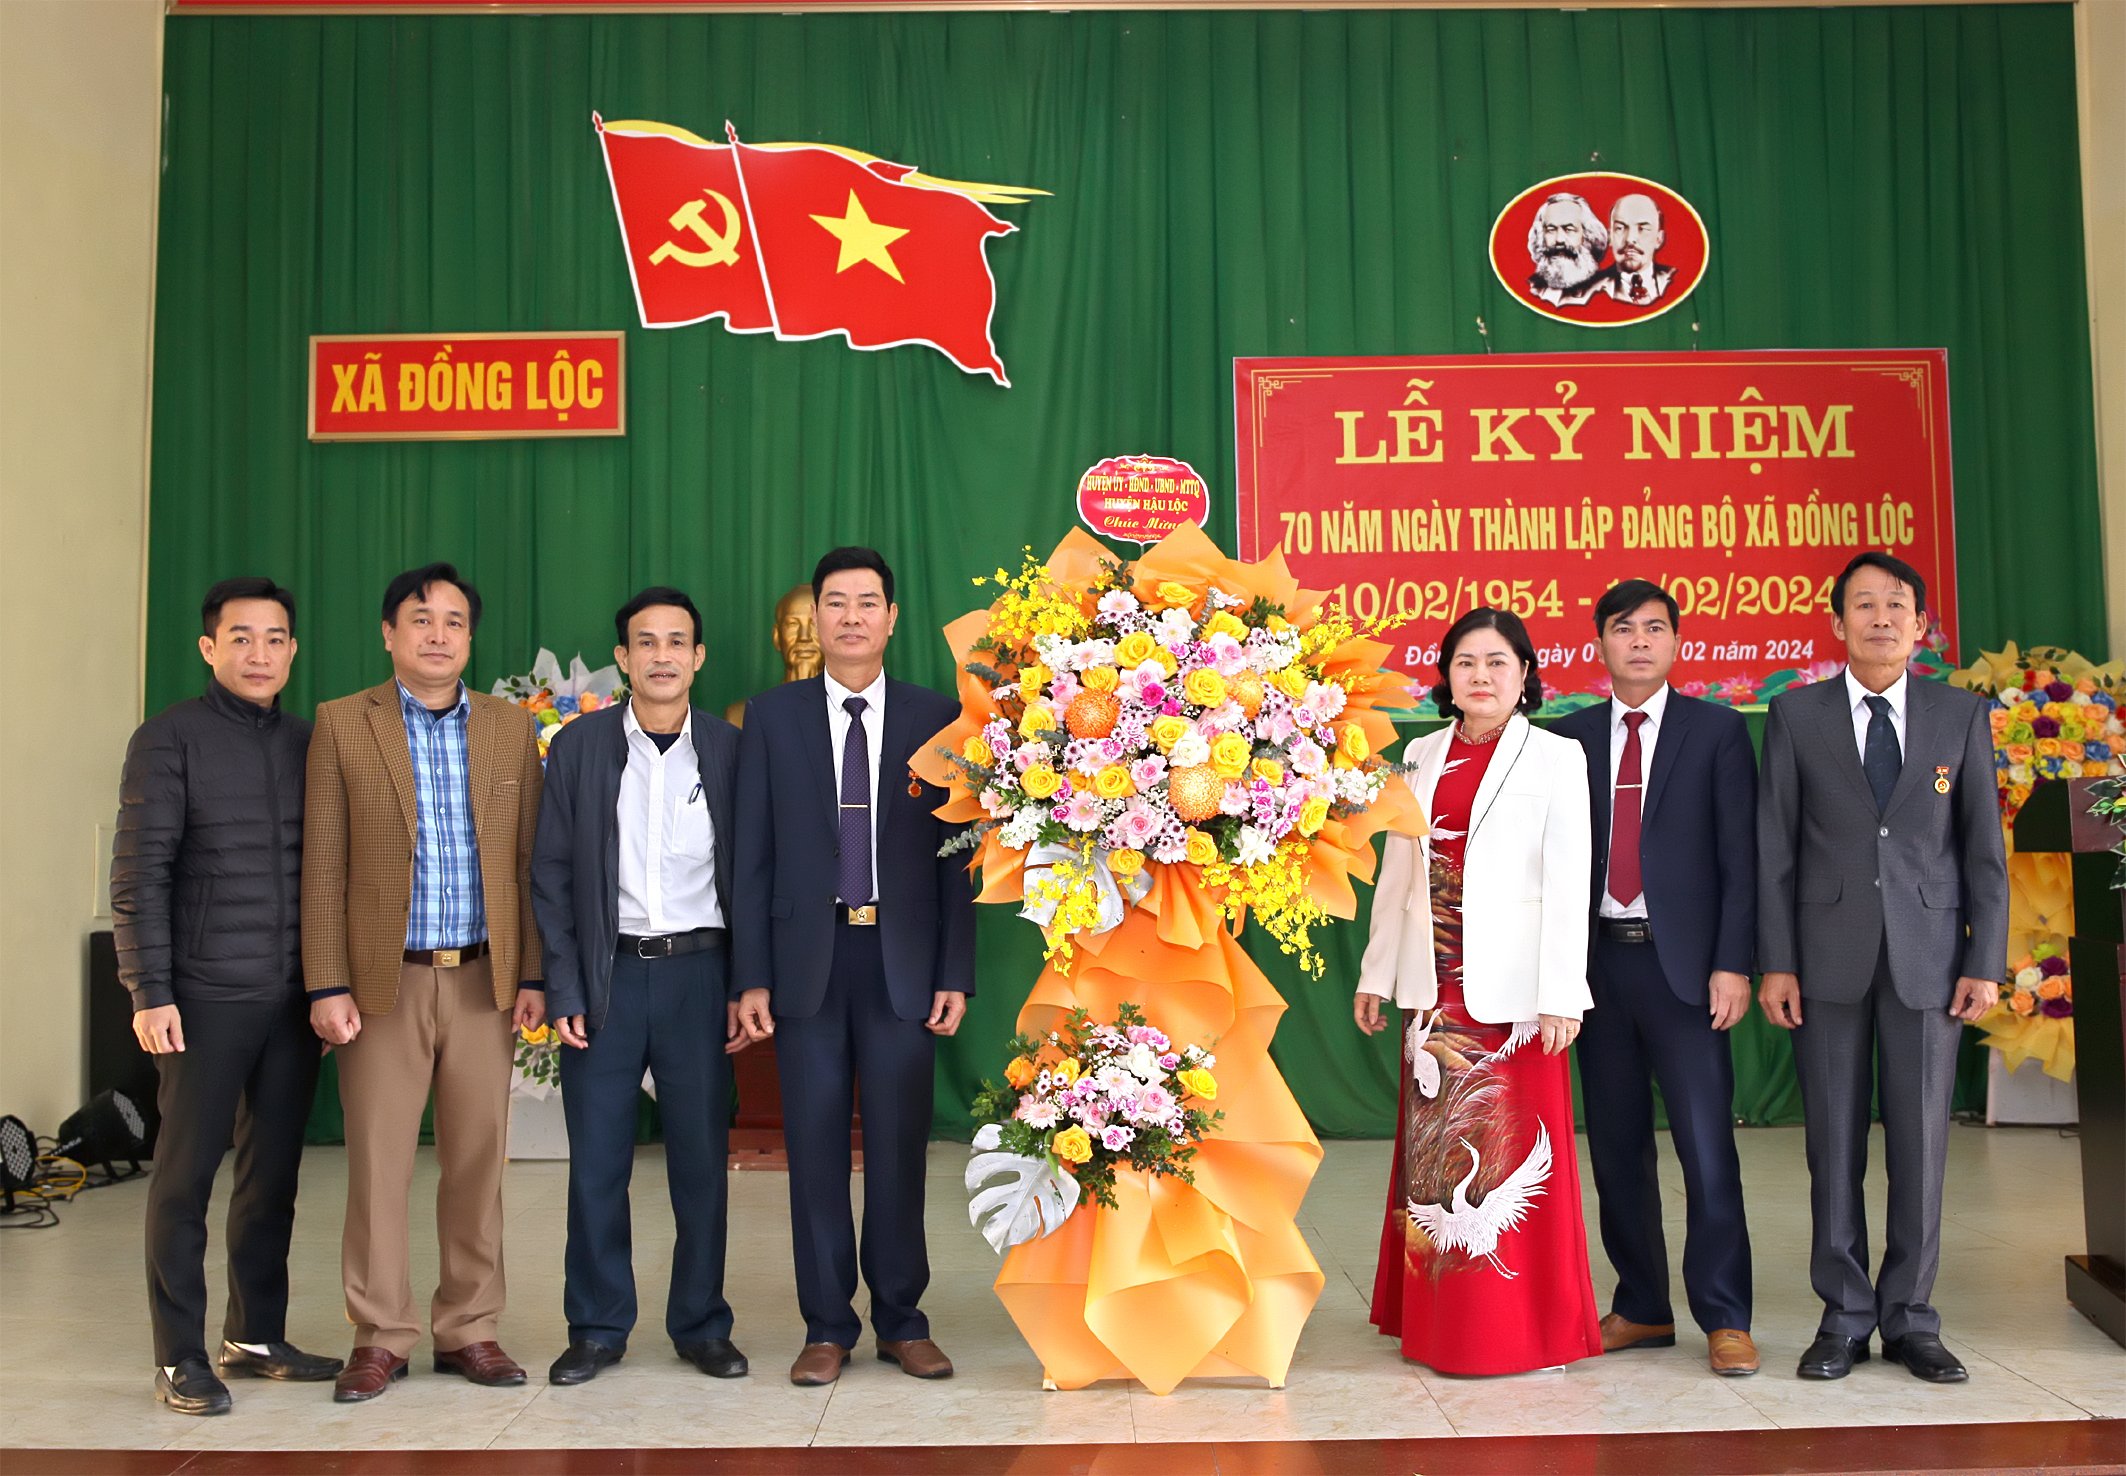 Đồng Lộc tổ chức lễ kỷ niệm 70 năm ngày thành lập Đảng bộ xã 10/02/ 1954 - 10/02/ 2024